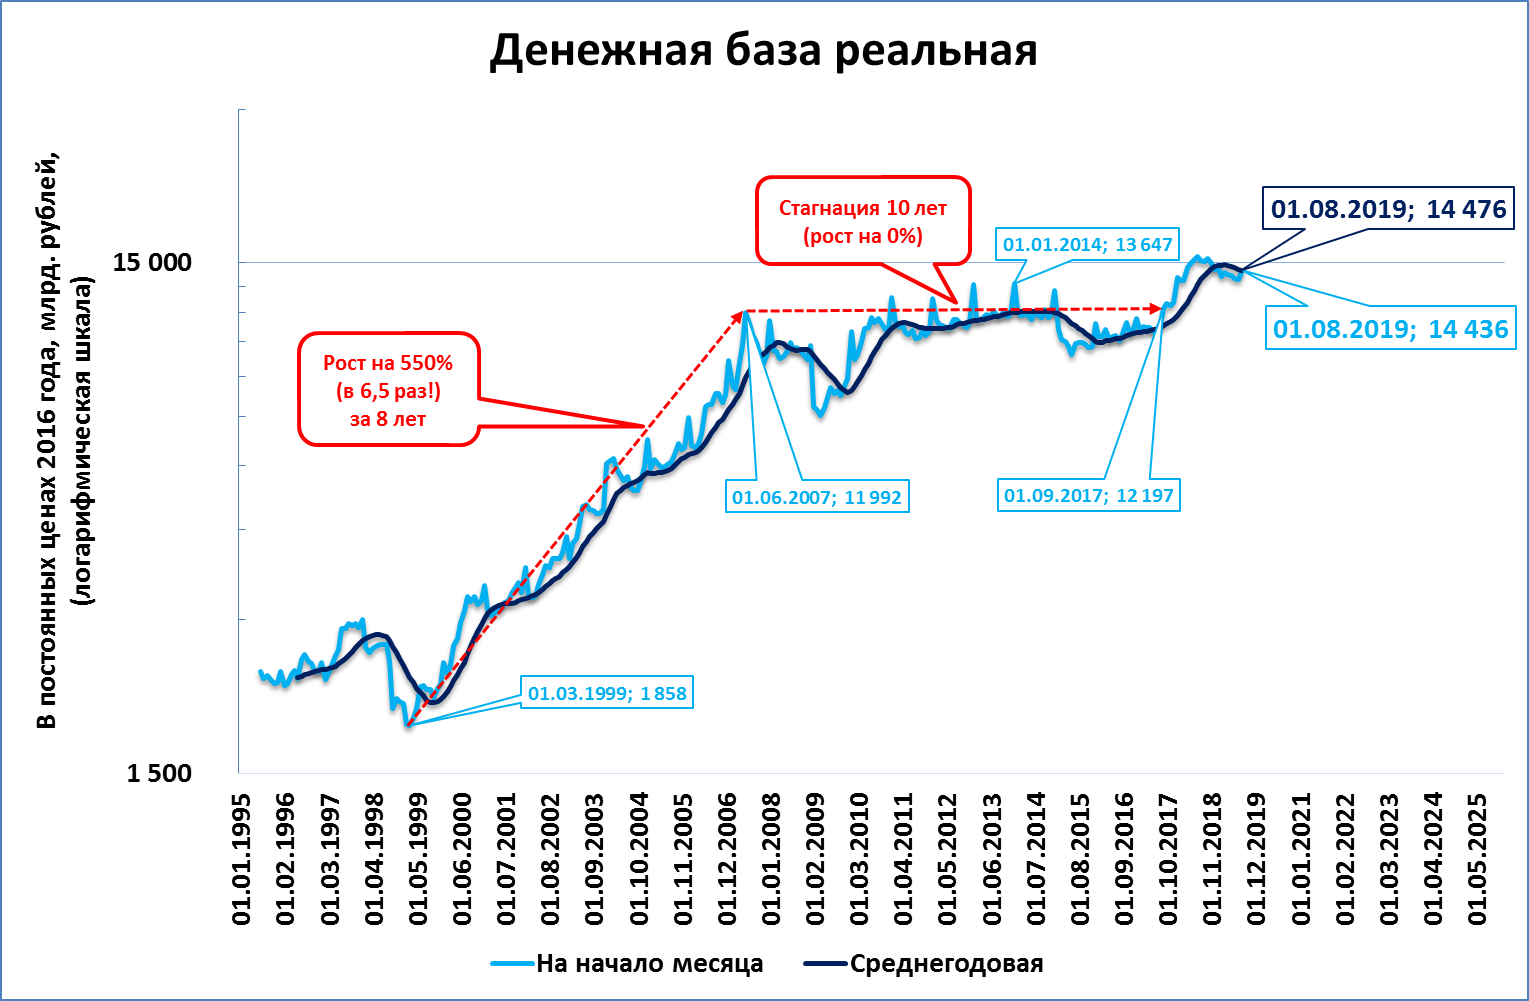 Стагнация рост. Стагнация Российской экономики. Стагнация в России. Стагнация на графике. Особенности стагнации Российской экономики.